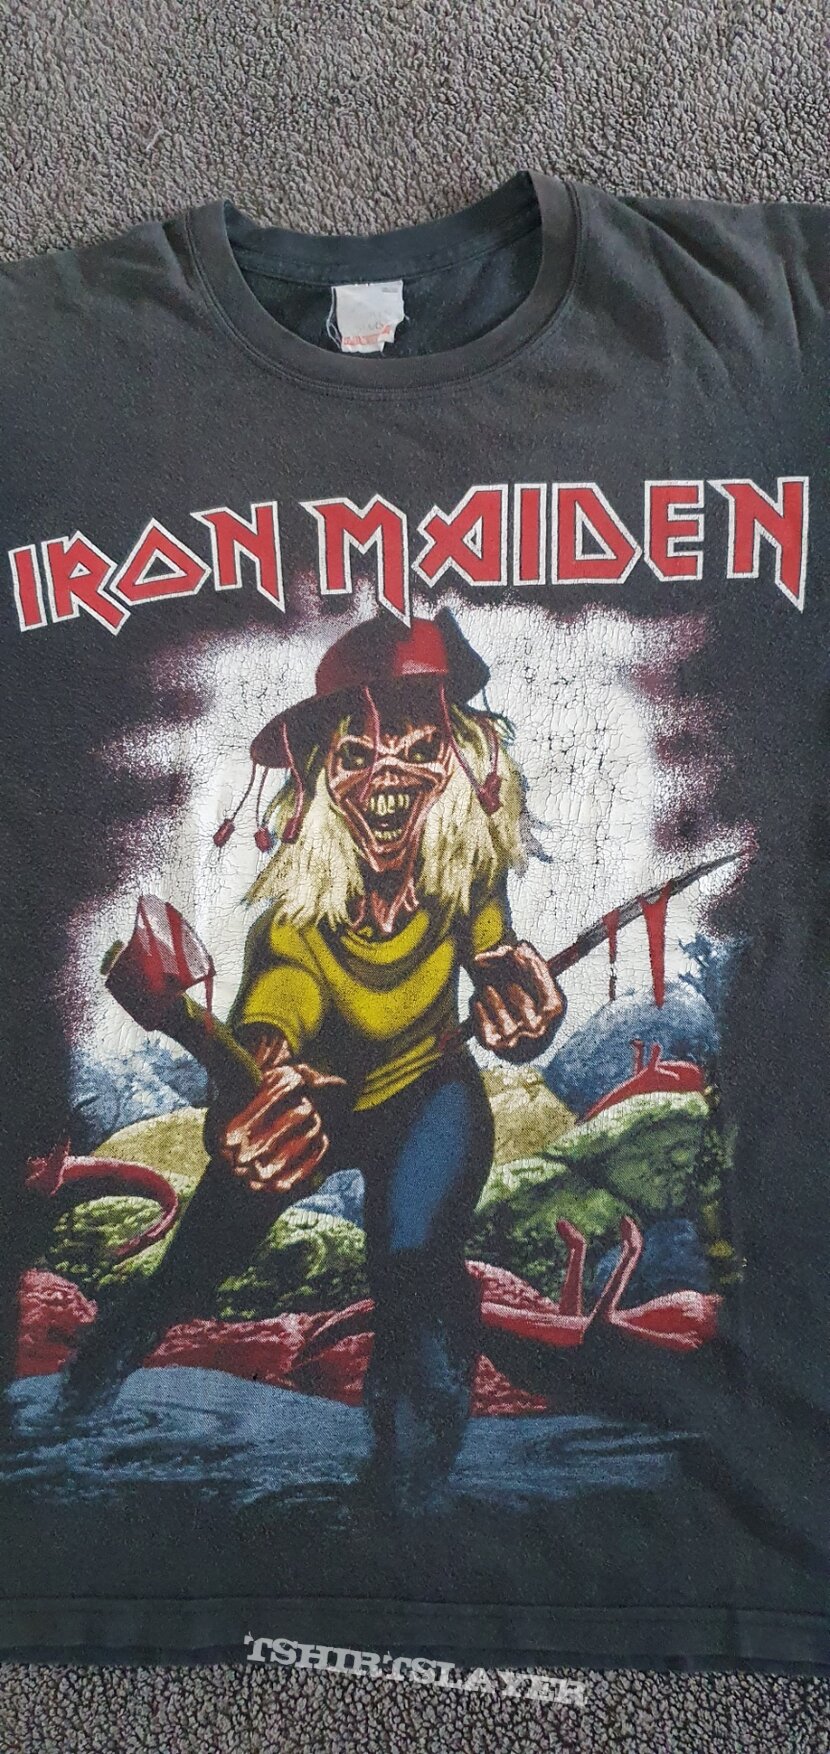 Iron Maiden Kangaroo Killer.